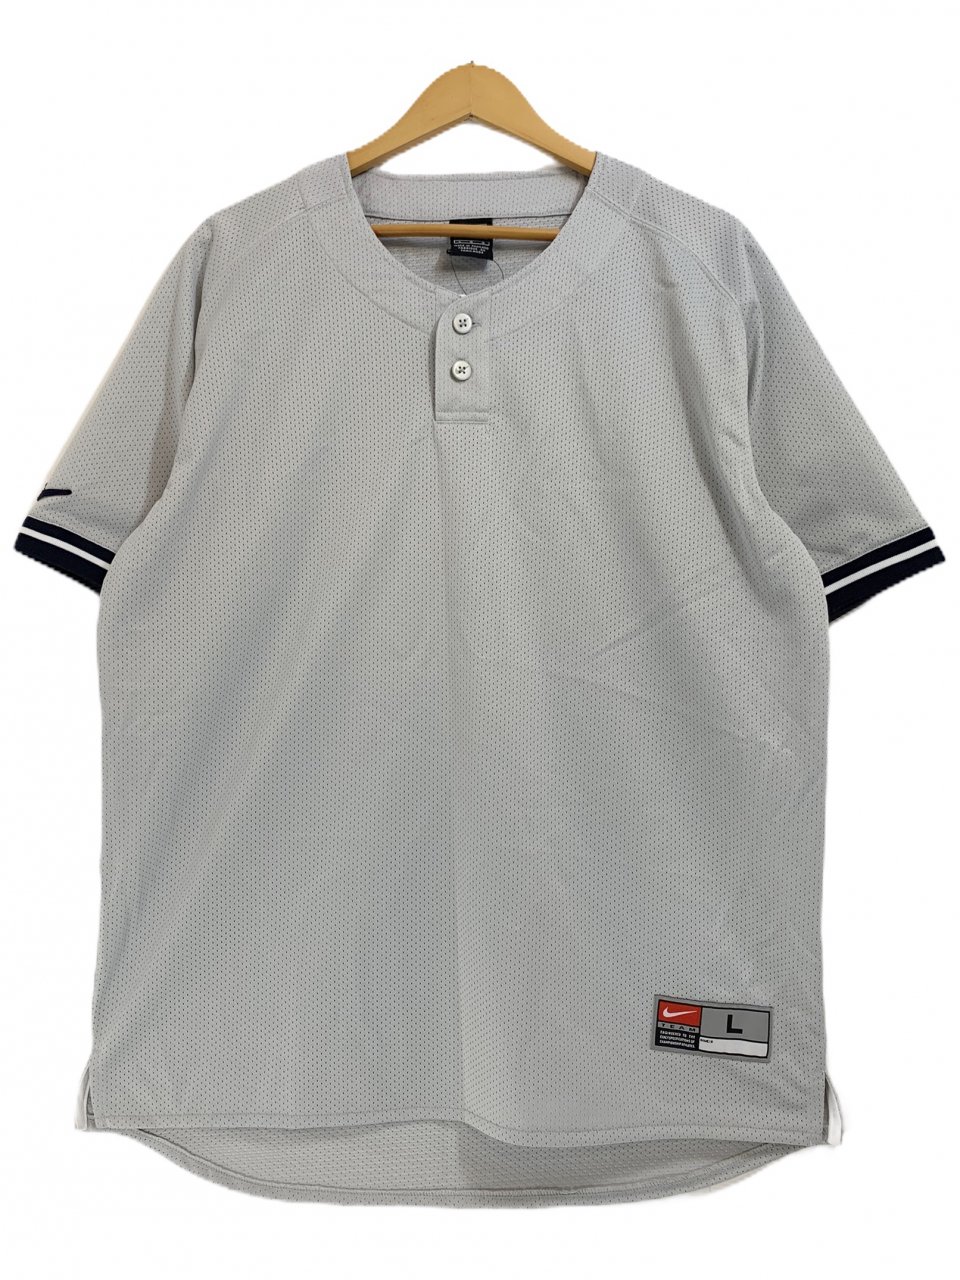 01年製 NIKE Pullover Baseball Shirt 灰 L 00s ナイキ ベースボール 